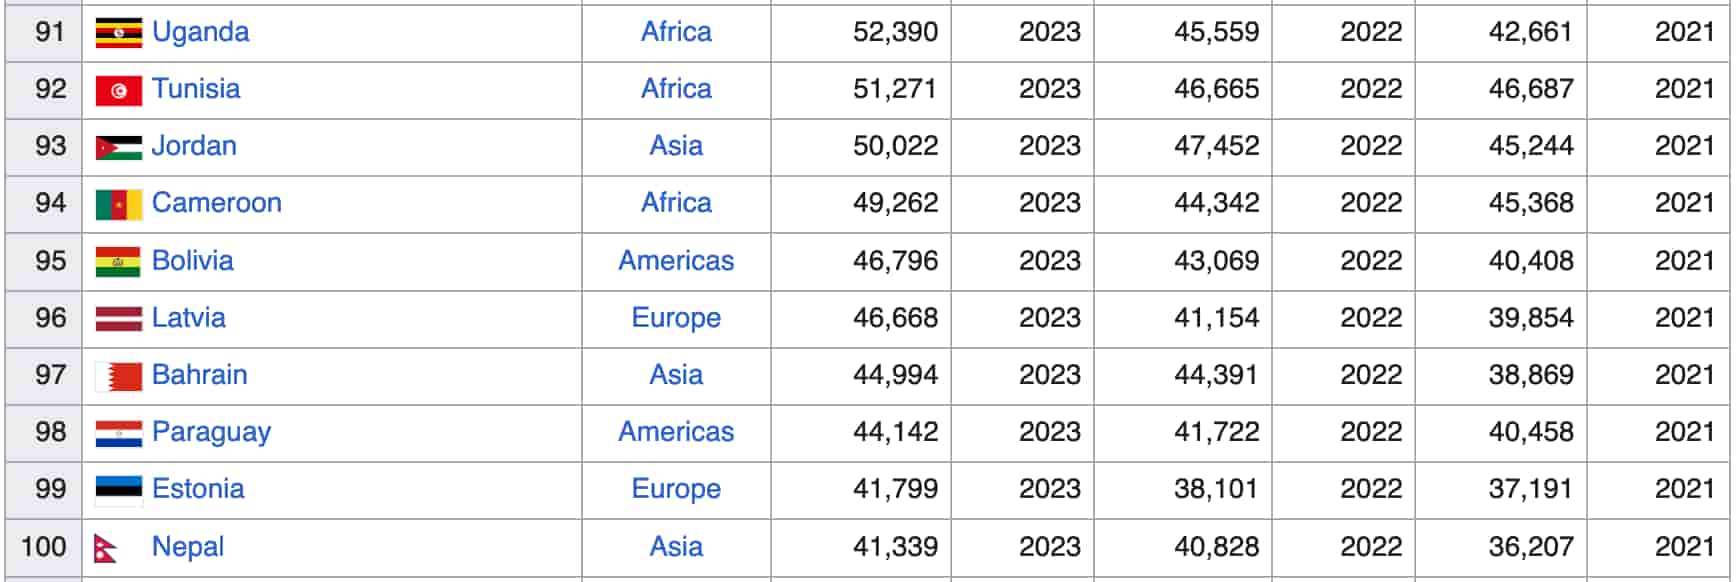 سایر کشورهای این فهرست 100 اقتصادی برتر با تولید ناخالص داخلی کمتر از کل ارزش قفل شدهDeFi عبارتند از کامرون، بولیوی، لتونی، بحرین، پاراگوئه، استونی و نپال.